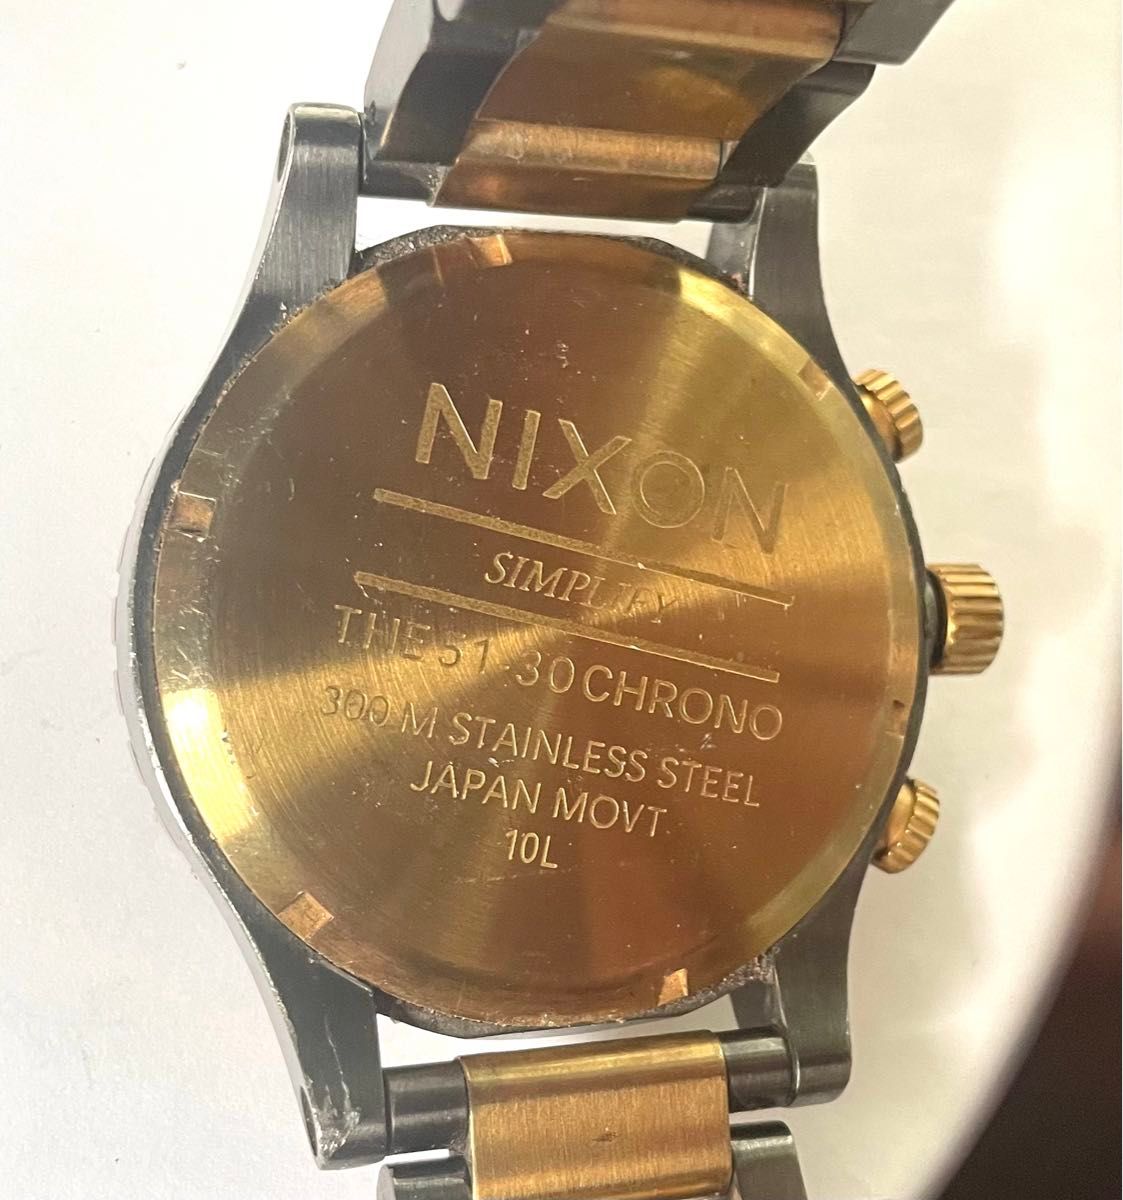 Nixon ニクソン 腕時計 51-30ジャンク電池切れ